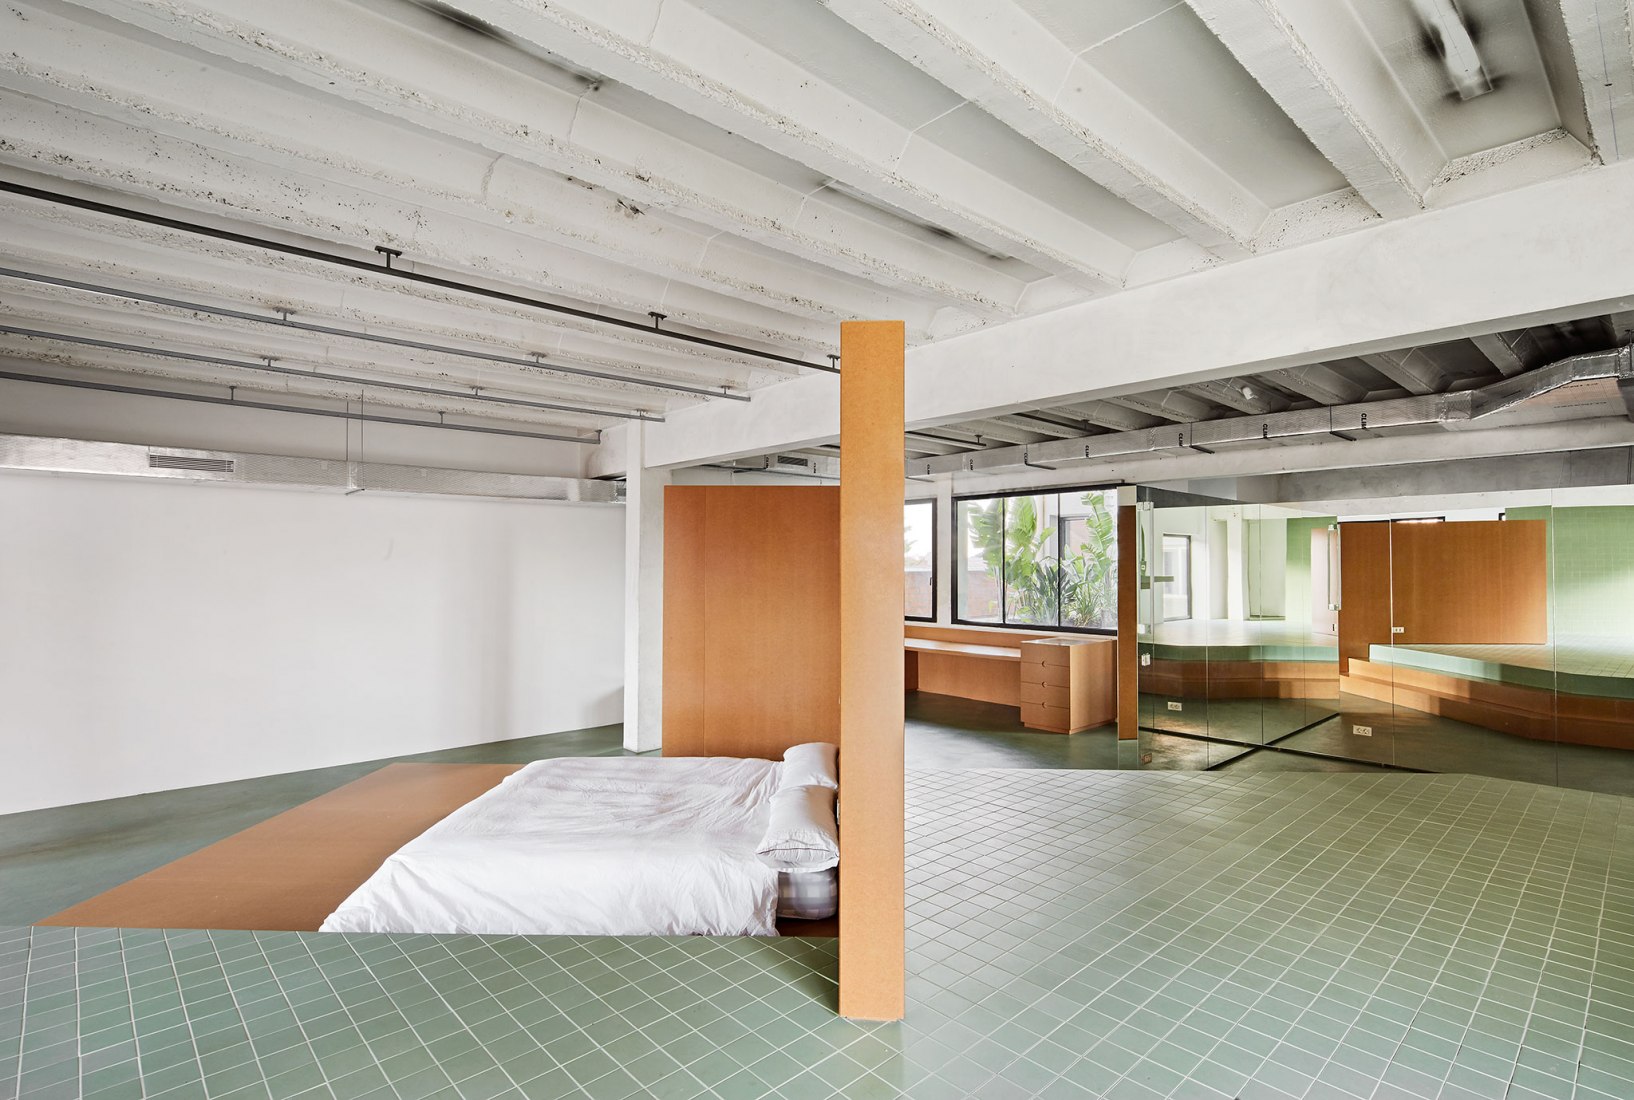 Apartamento de 700m² para un soltero por ARQUITECTURA-G. Fotografía por José Hevia